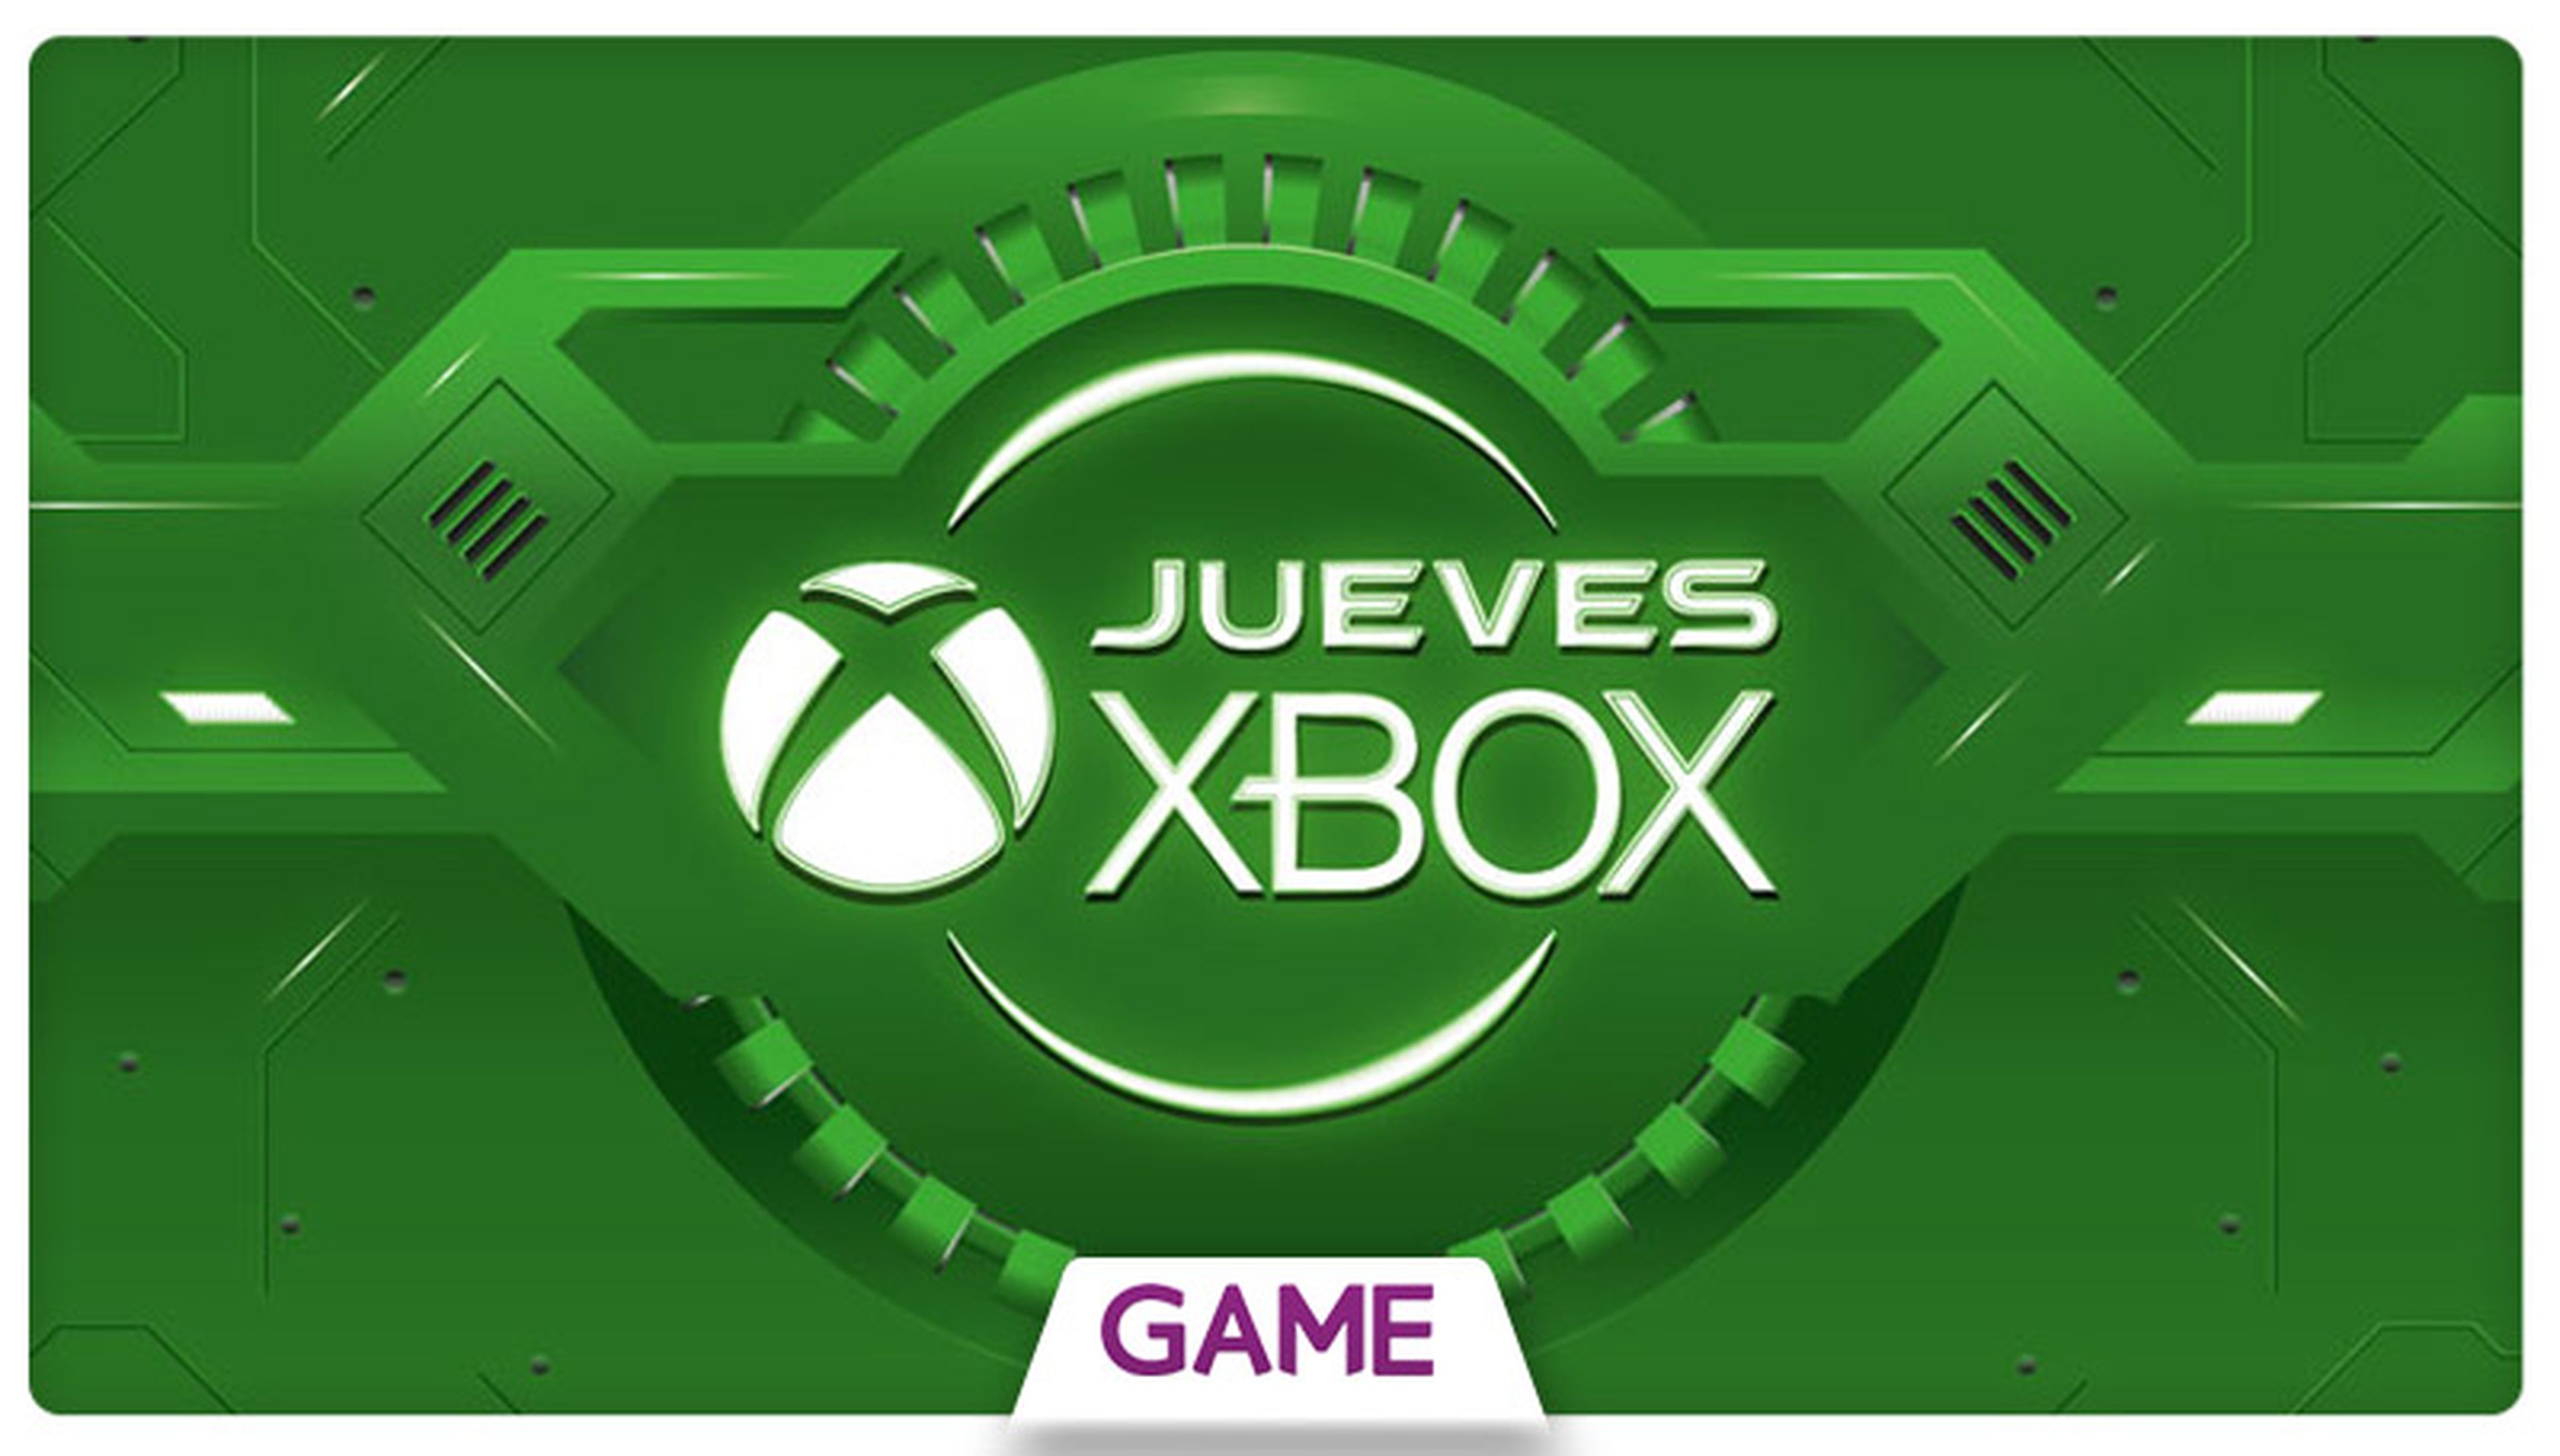 Jueves Xbox en GAME: Decimoctava semana de ofertas